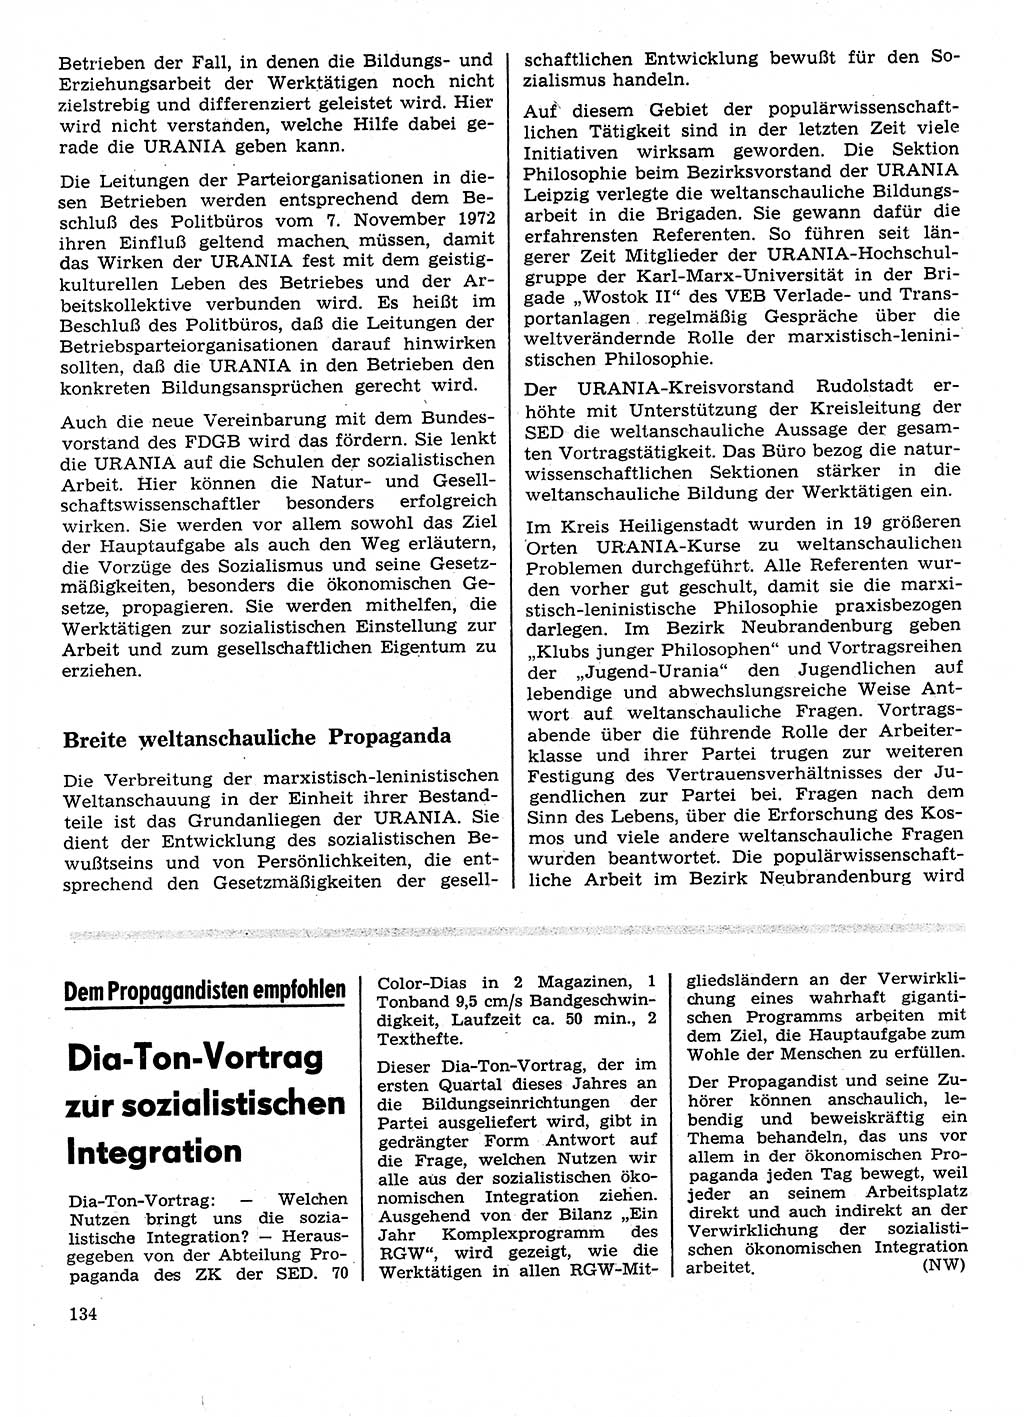 Neuer Weg (NW), Organ des Zentralkomitees (ZK) der SED (Sozialistische Einheitspartei Deutschlands) für Fragen des Parteilebens, 28. Jahrgang [Deutsche Demokratische Republik (DDR)] 1973, Seite 134 (NW ZK SED DDR 1973, S. 134)